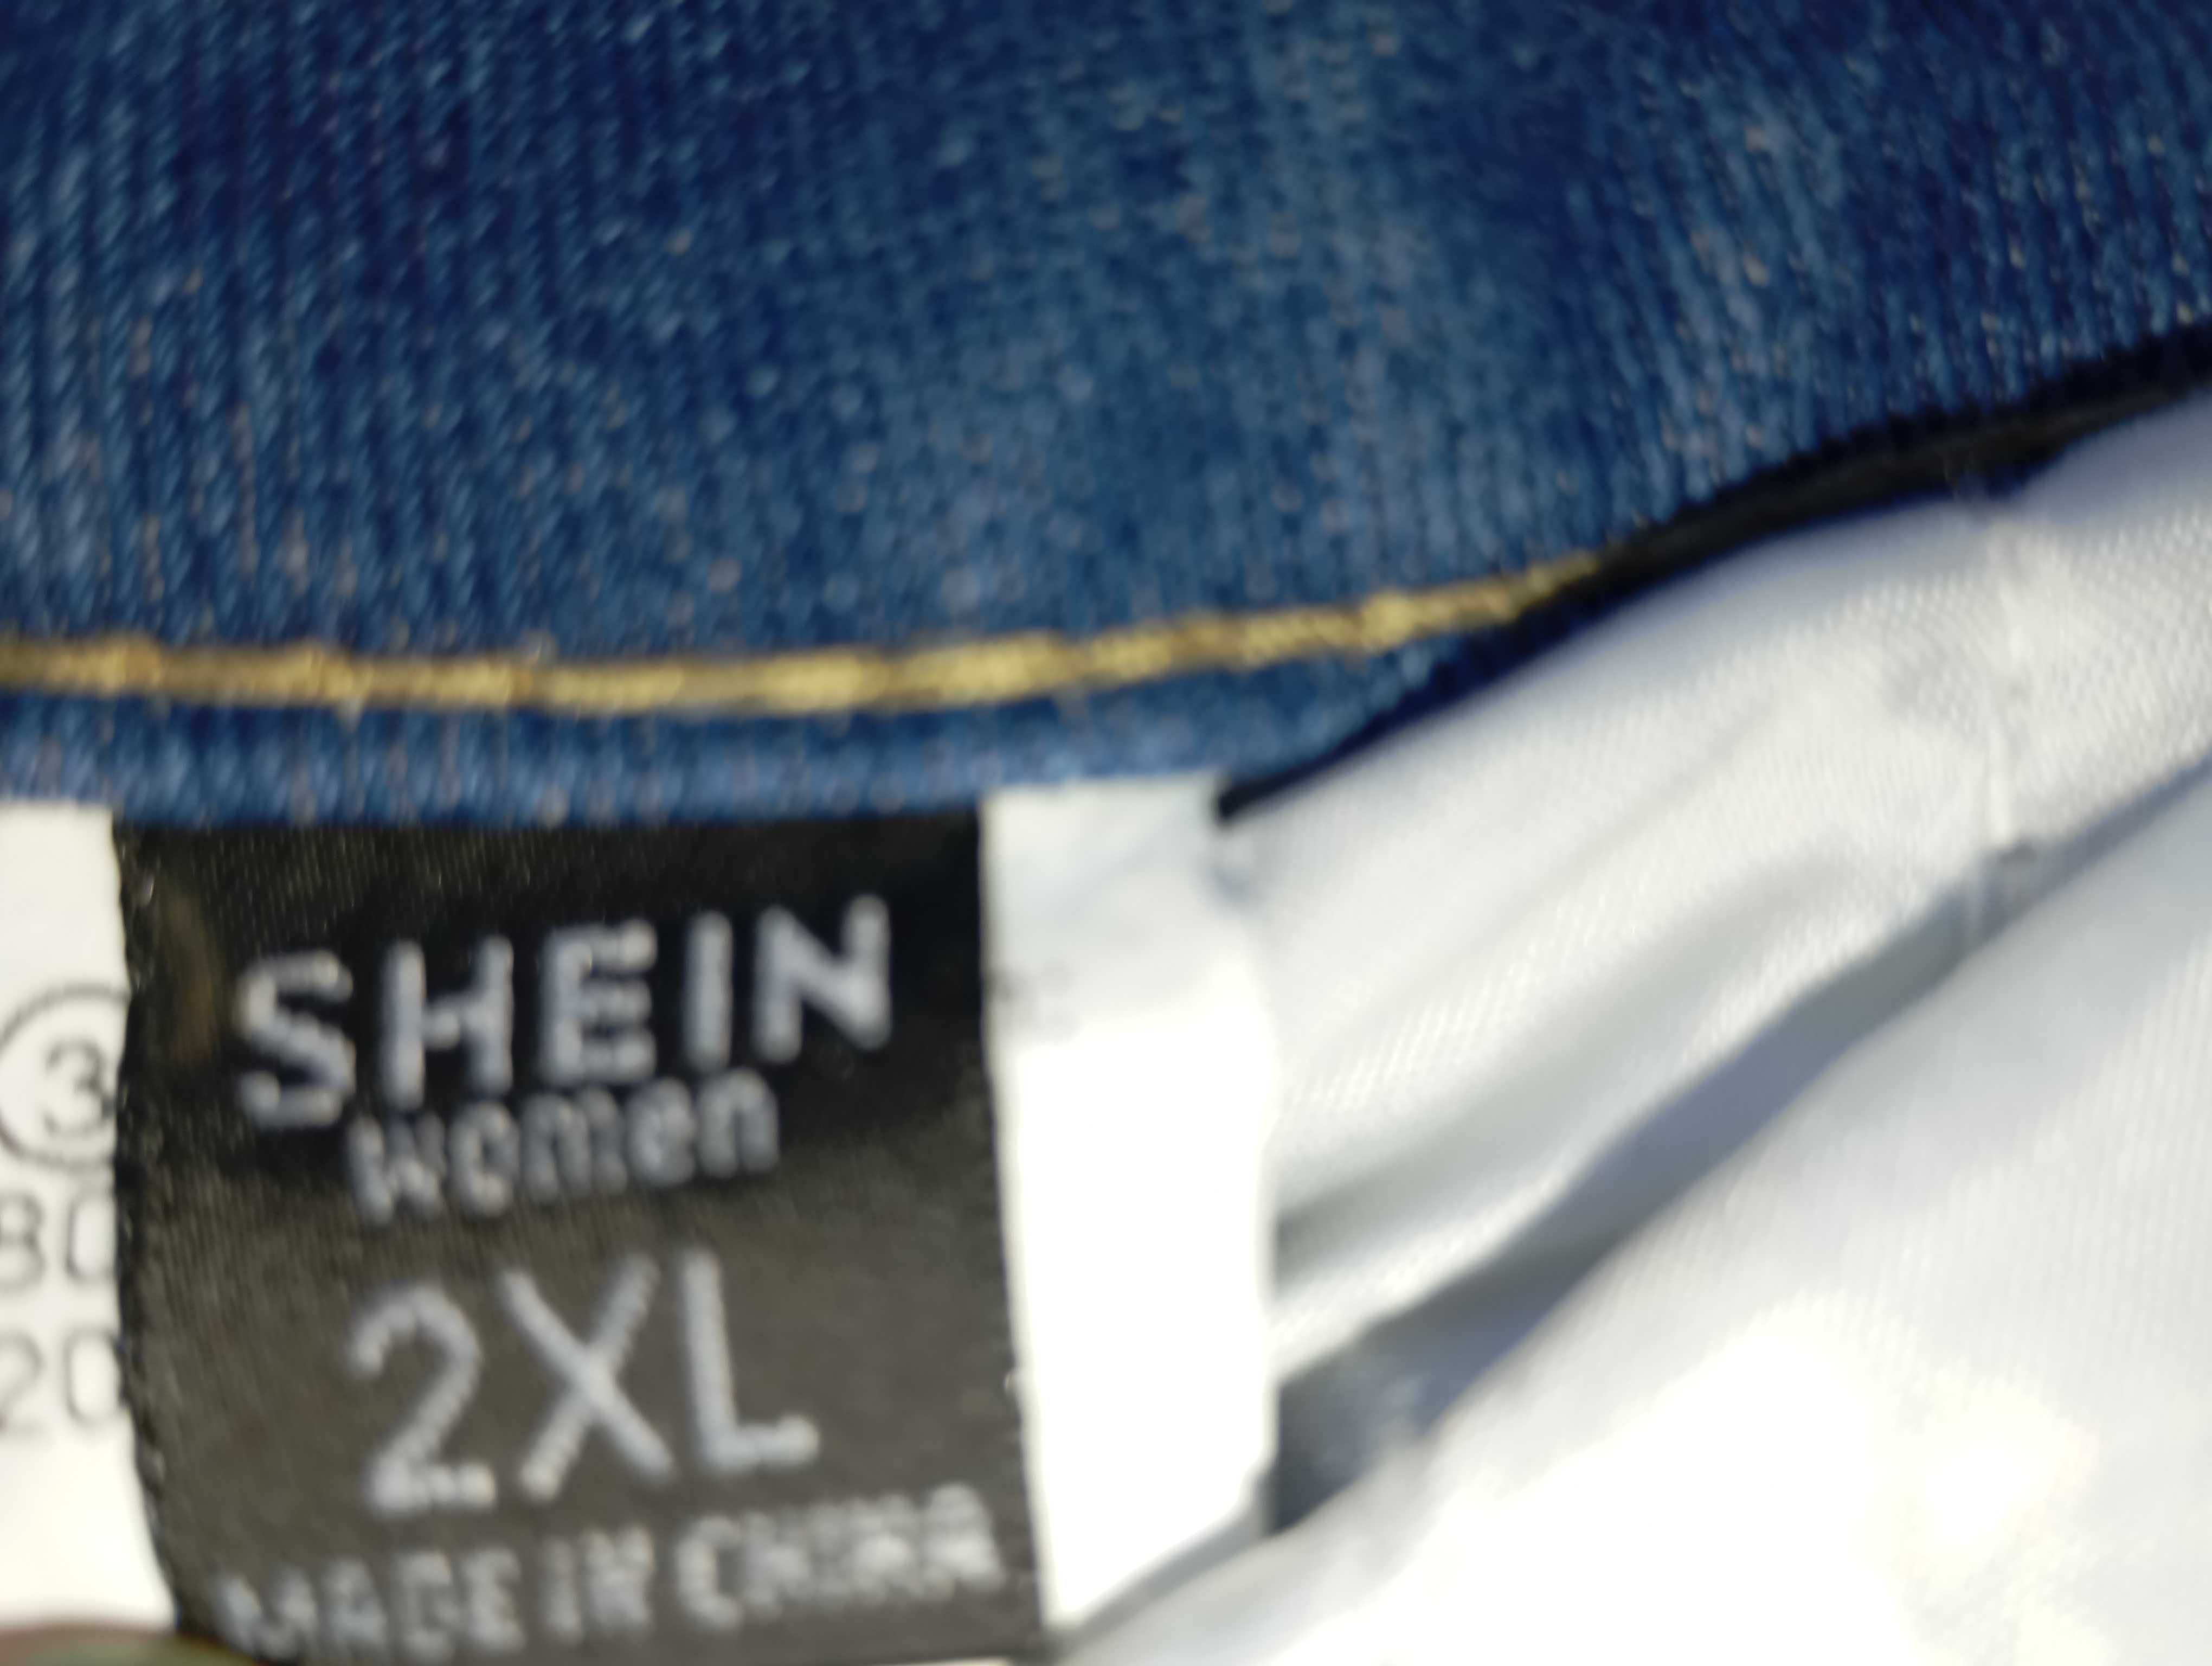 Оригинальные хулиганские джинсы мом р 54 - 56
Shein